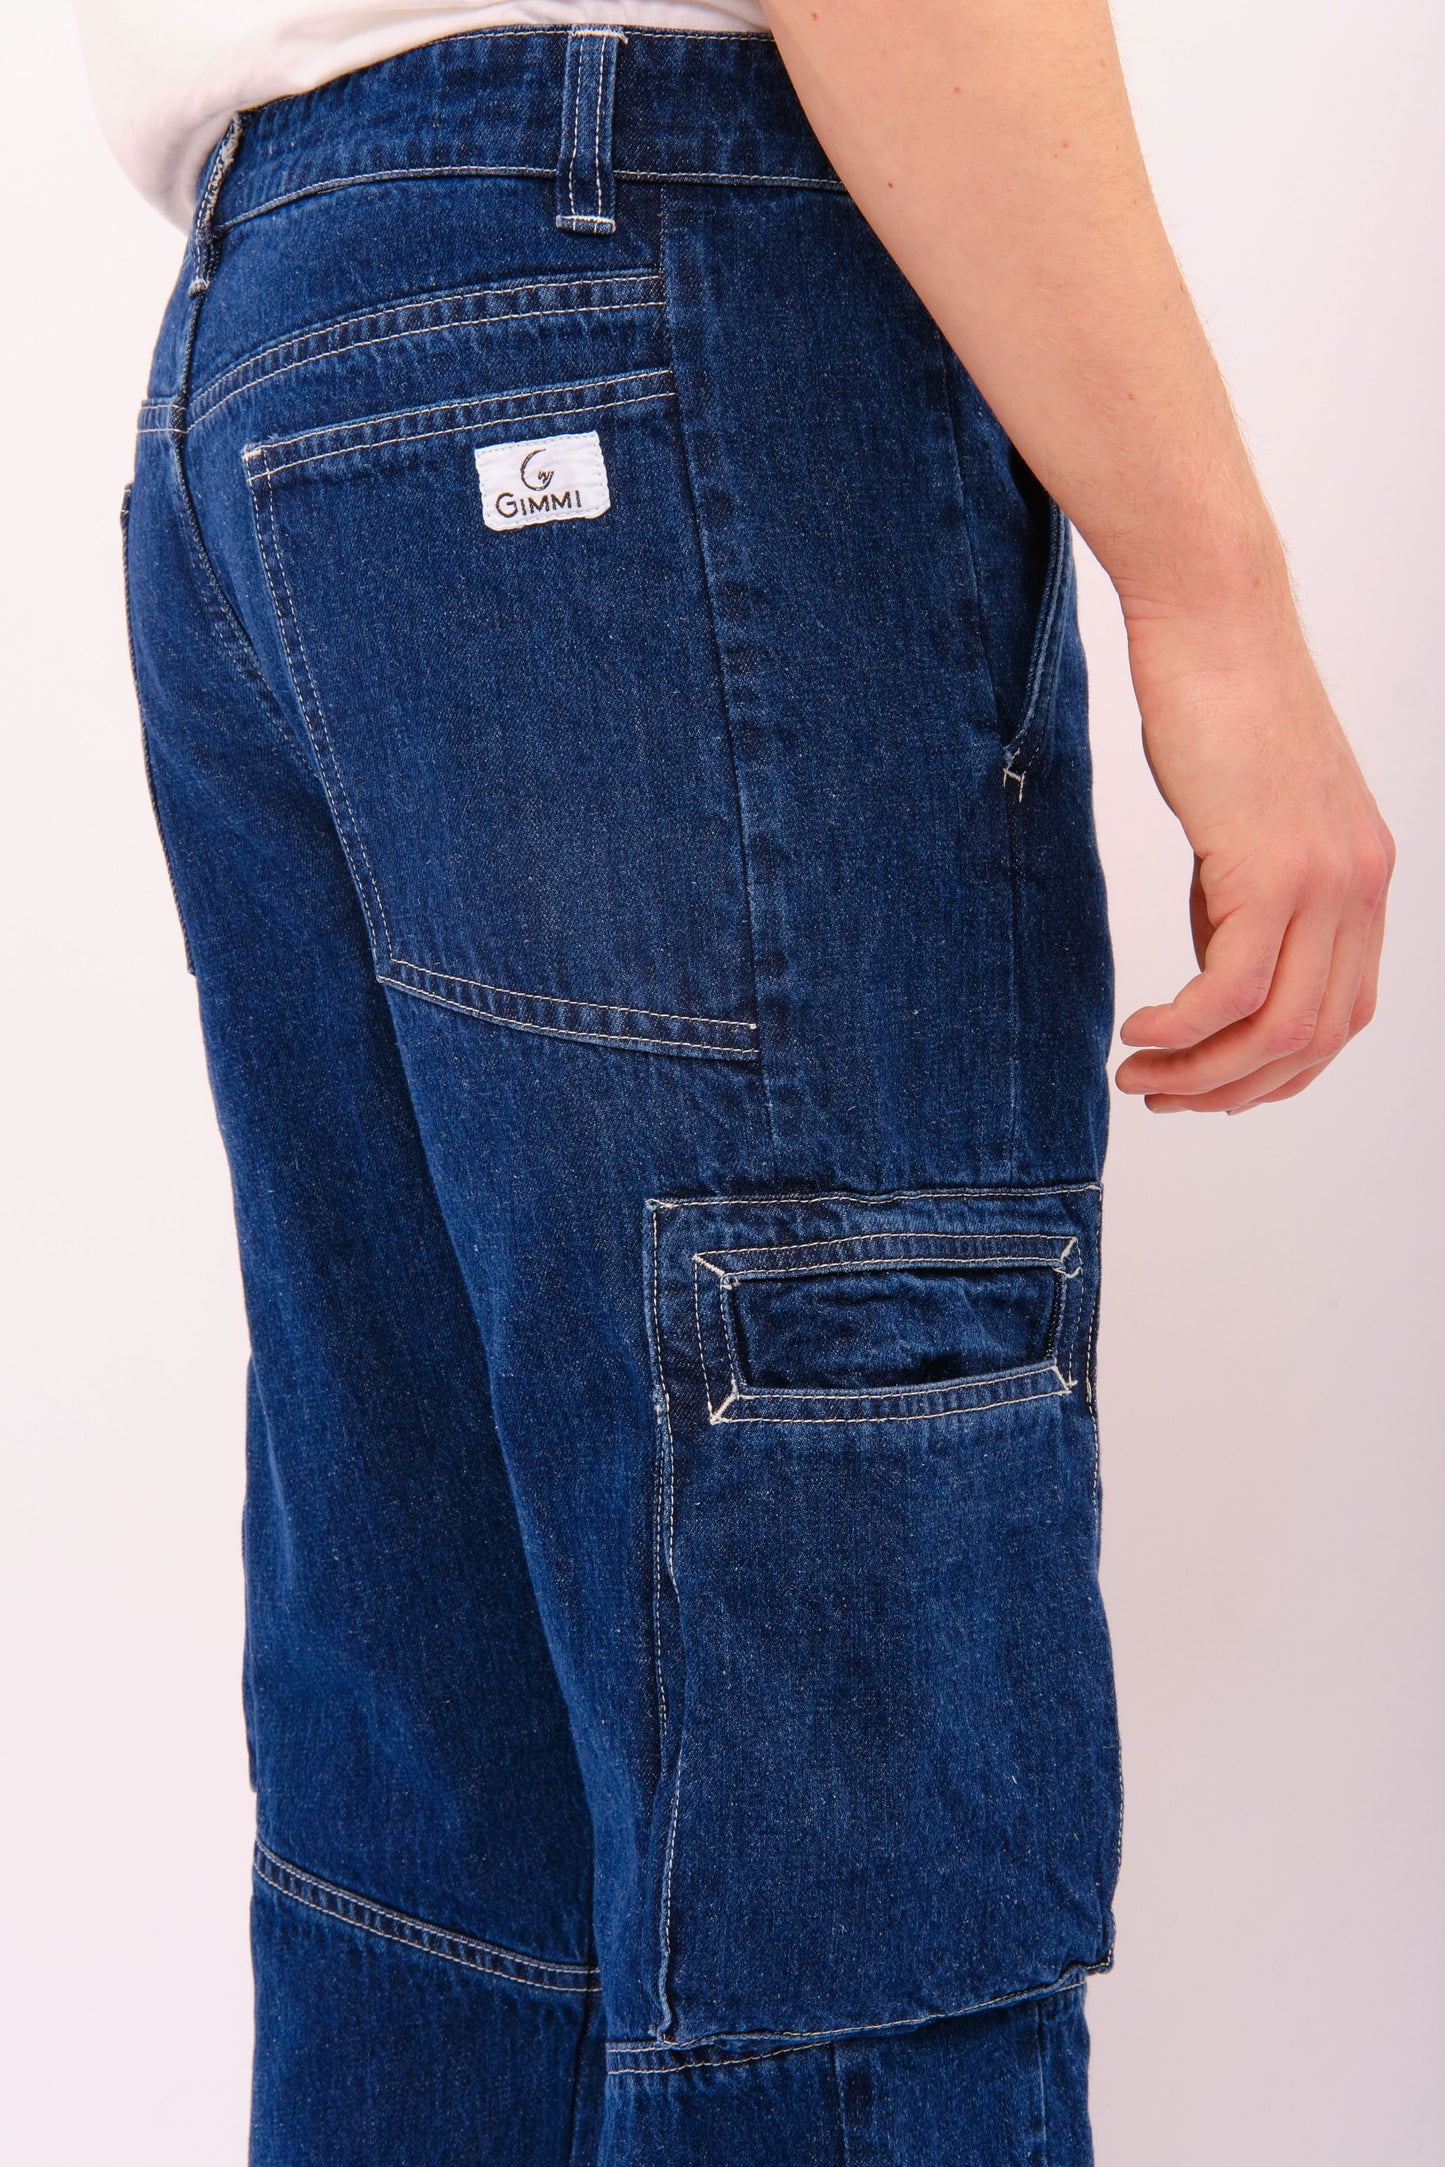 jeans-cargo-denim-canapa-dettagli1